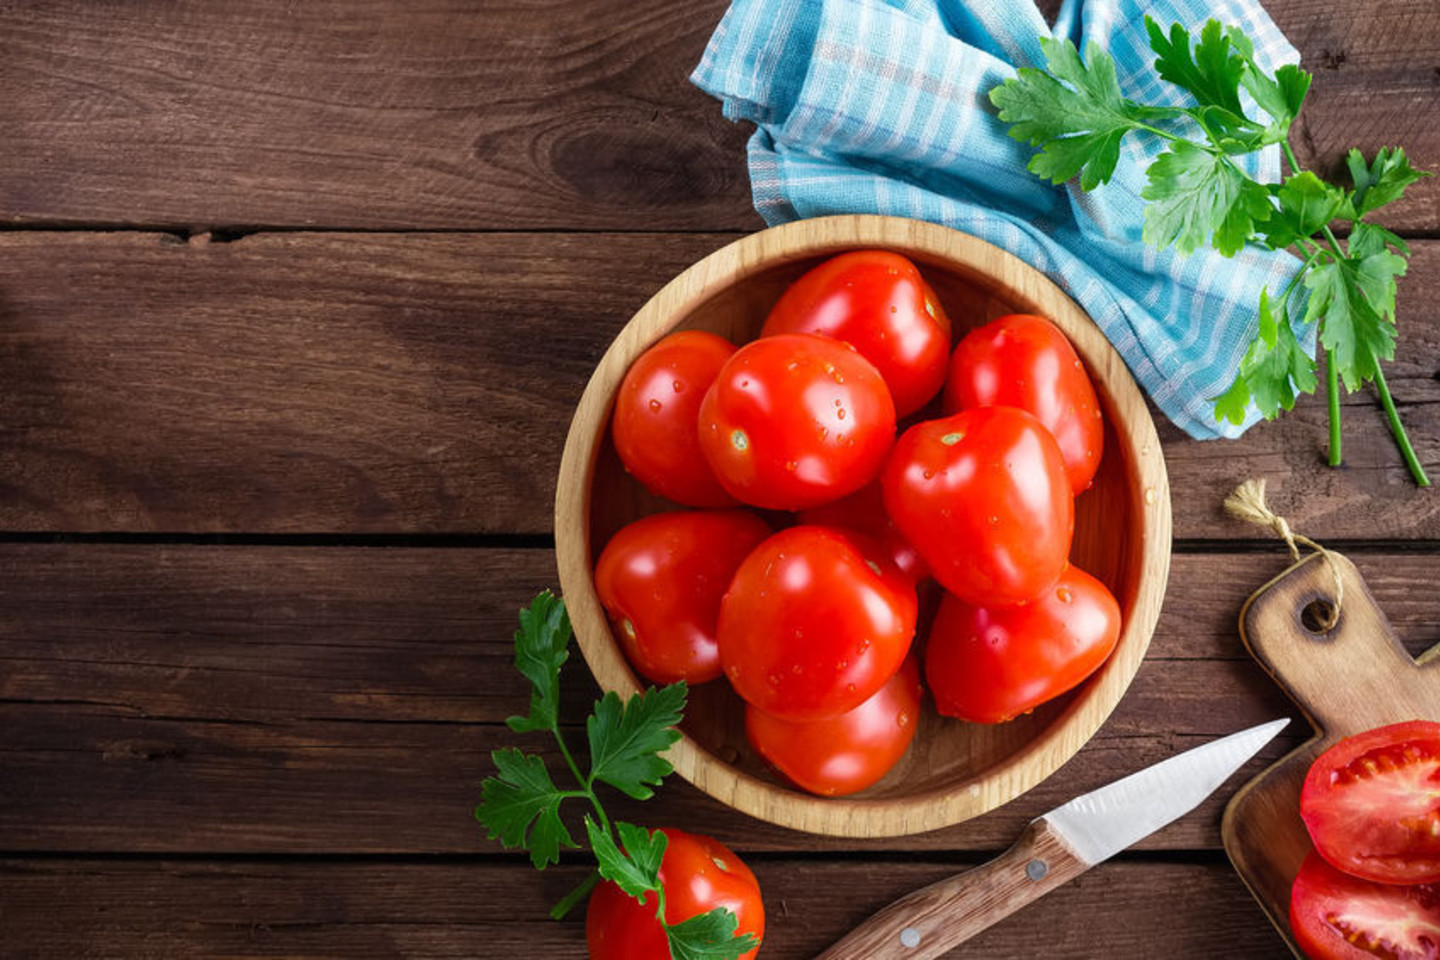 Nors iš pomidorų galima pagaminti salotas, sriubas, užkandžius ar net uogienes, daugelis neišnaudoja šios daržovės privalumų.<br>123rf nuotr.